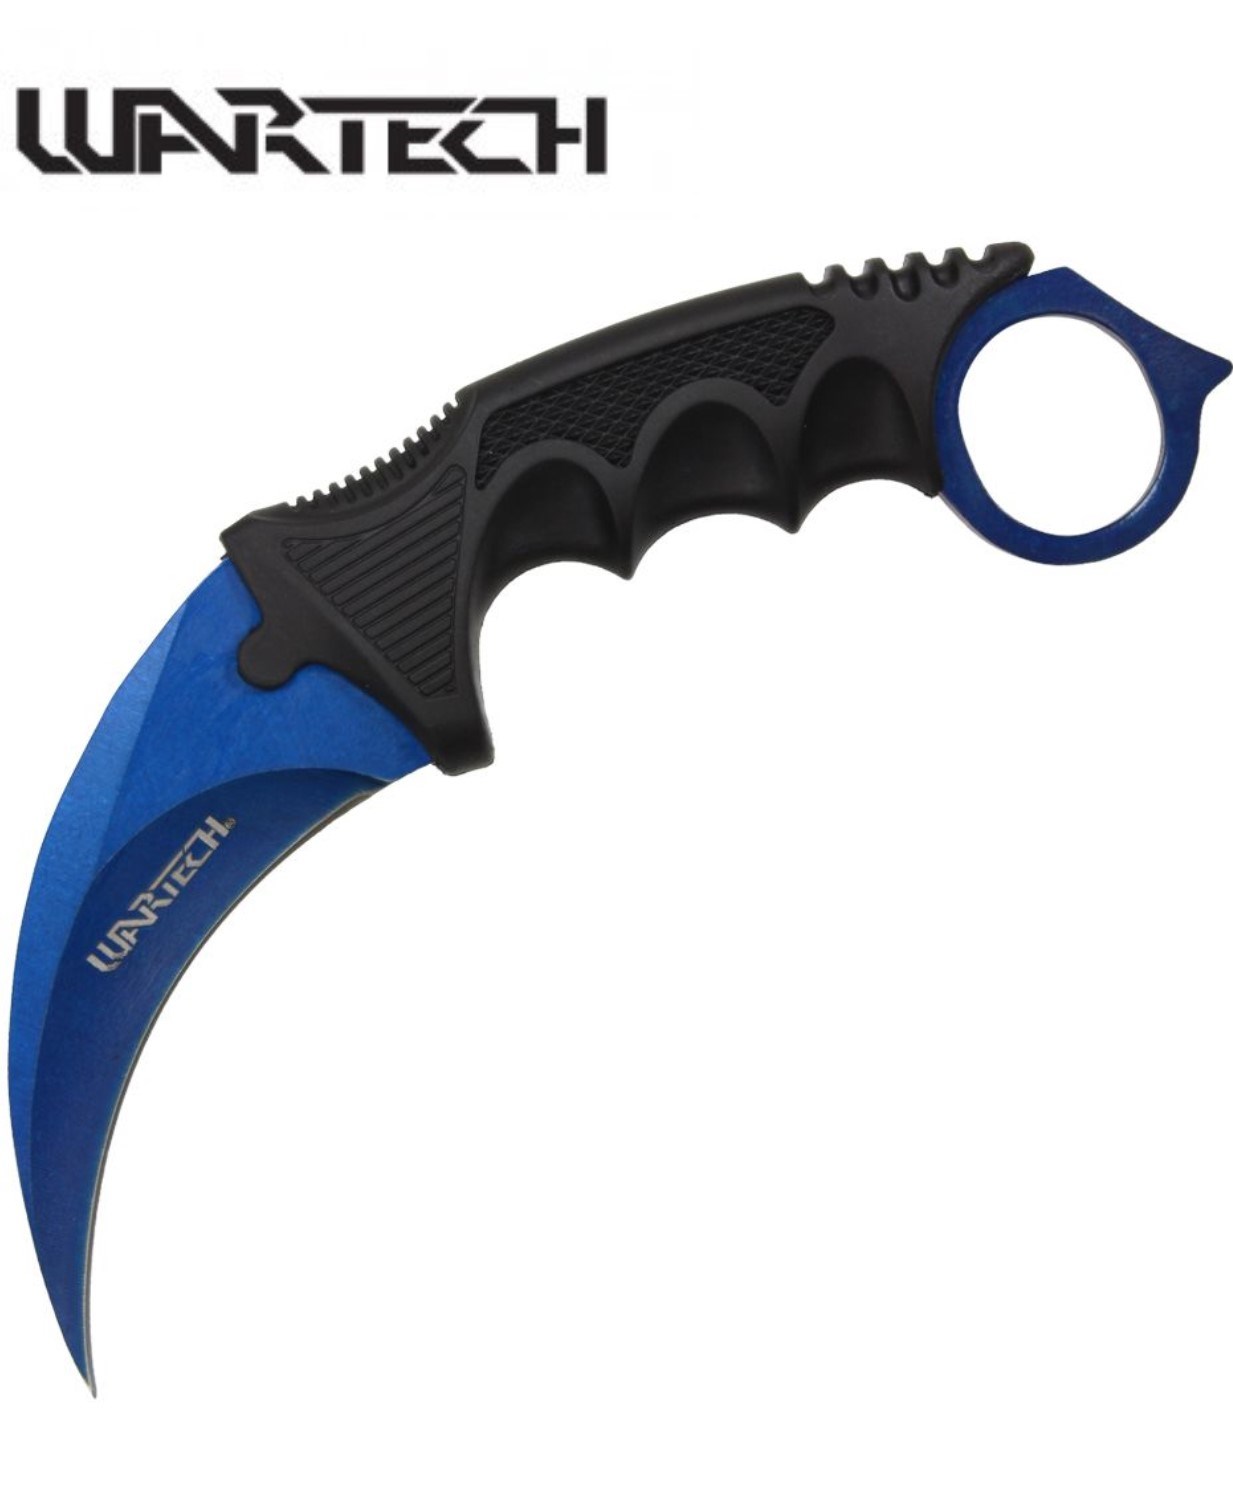 Wartech 7.5″ Blue Karambit Knife - Giri Martial Arts Supplies